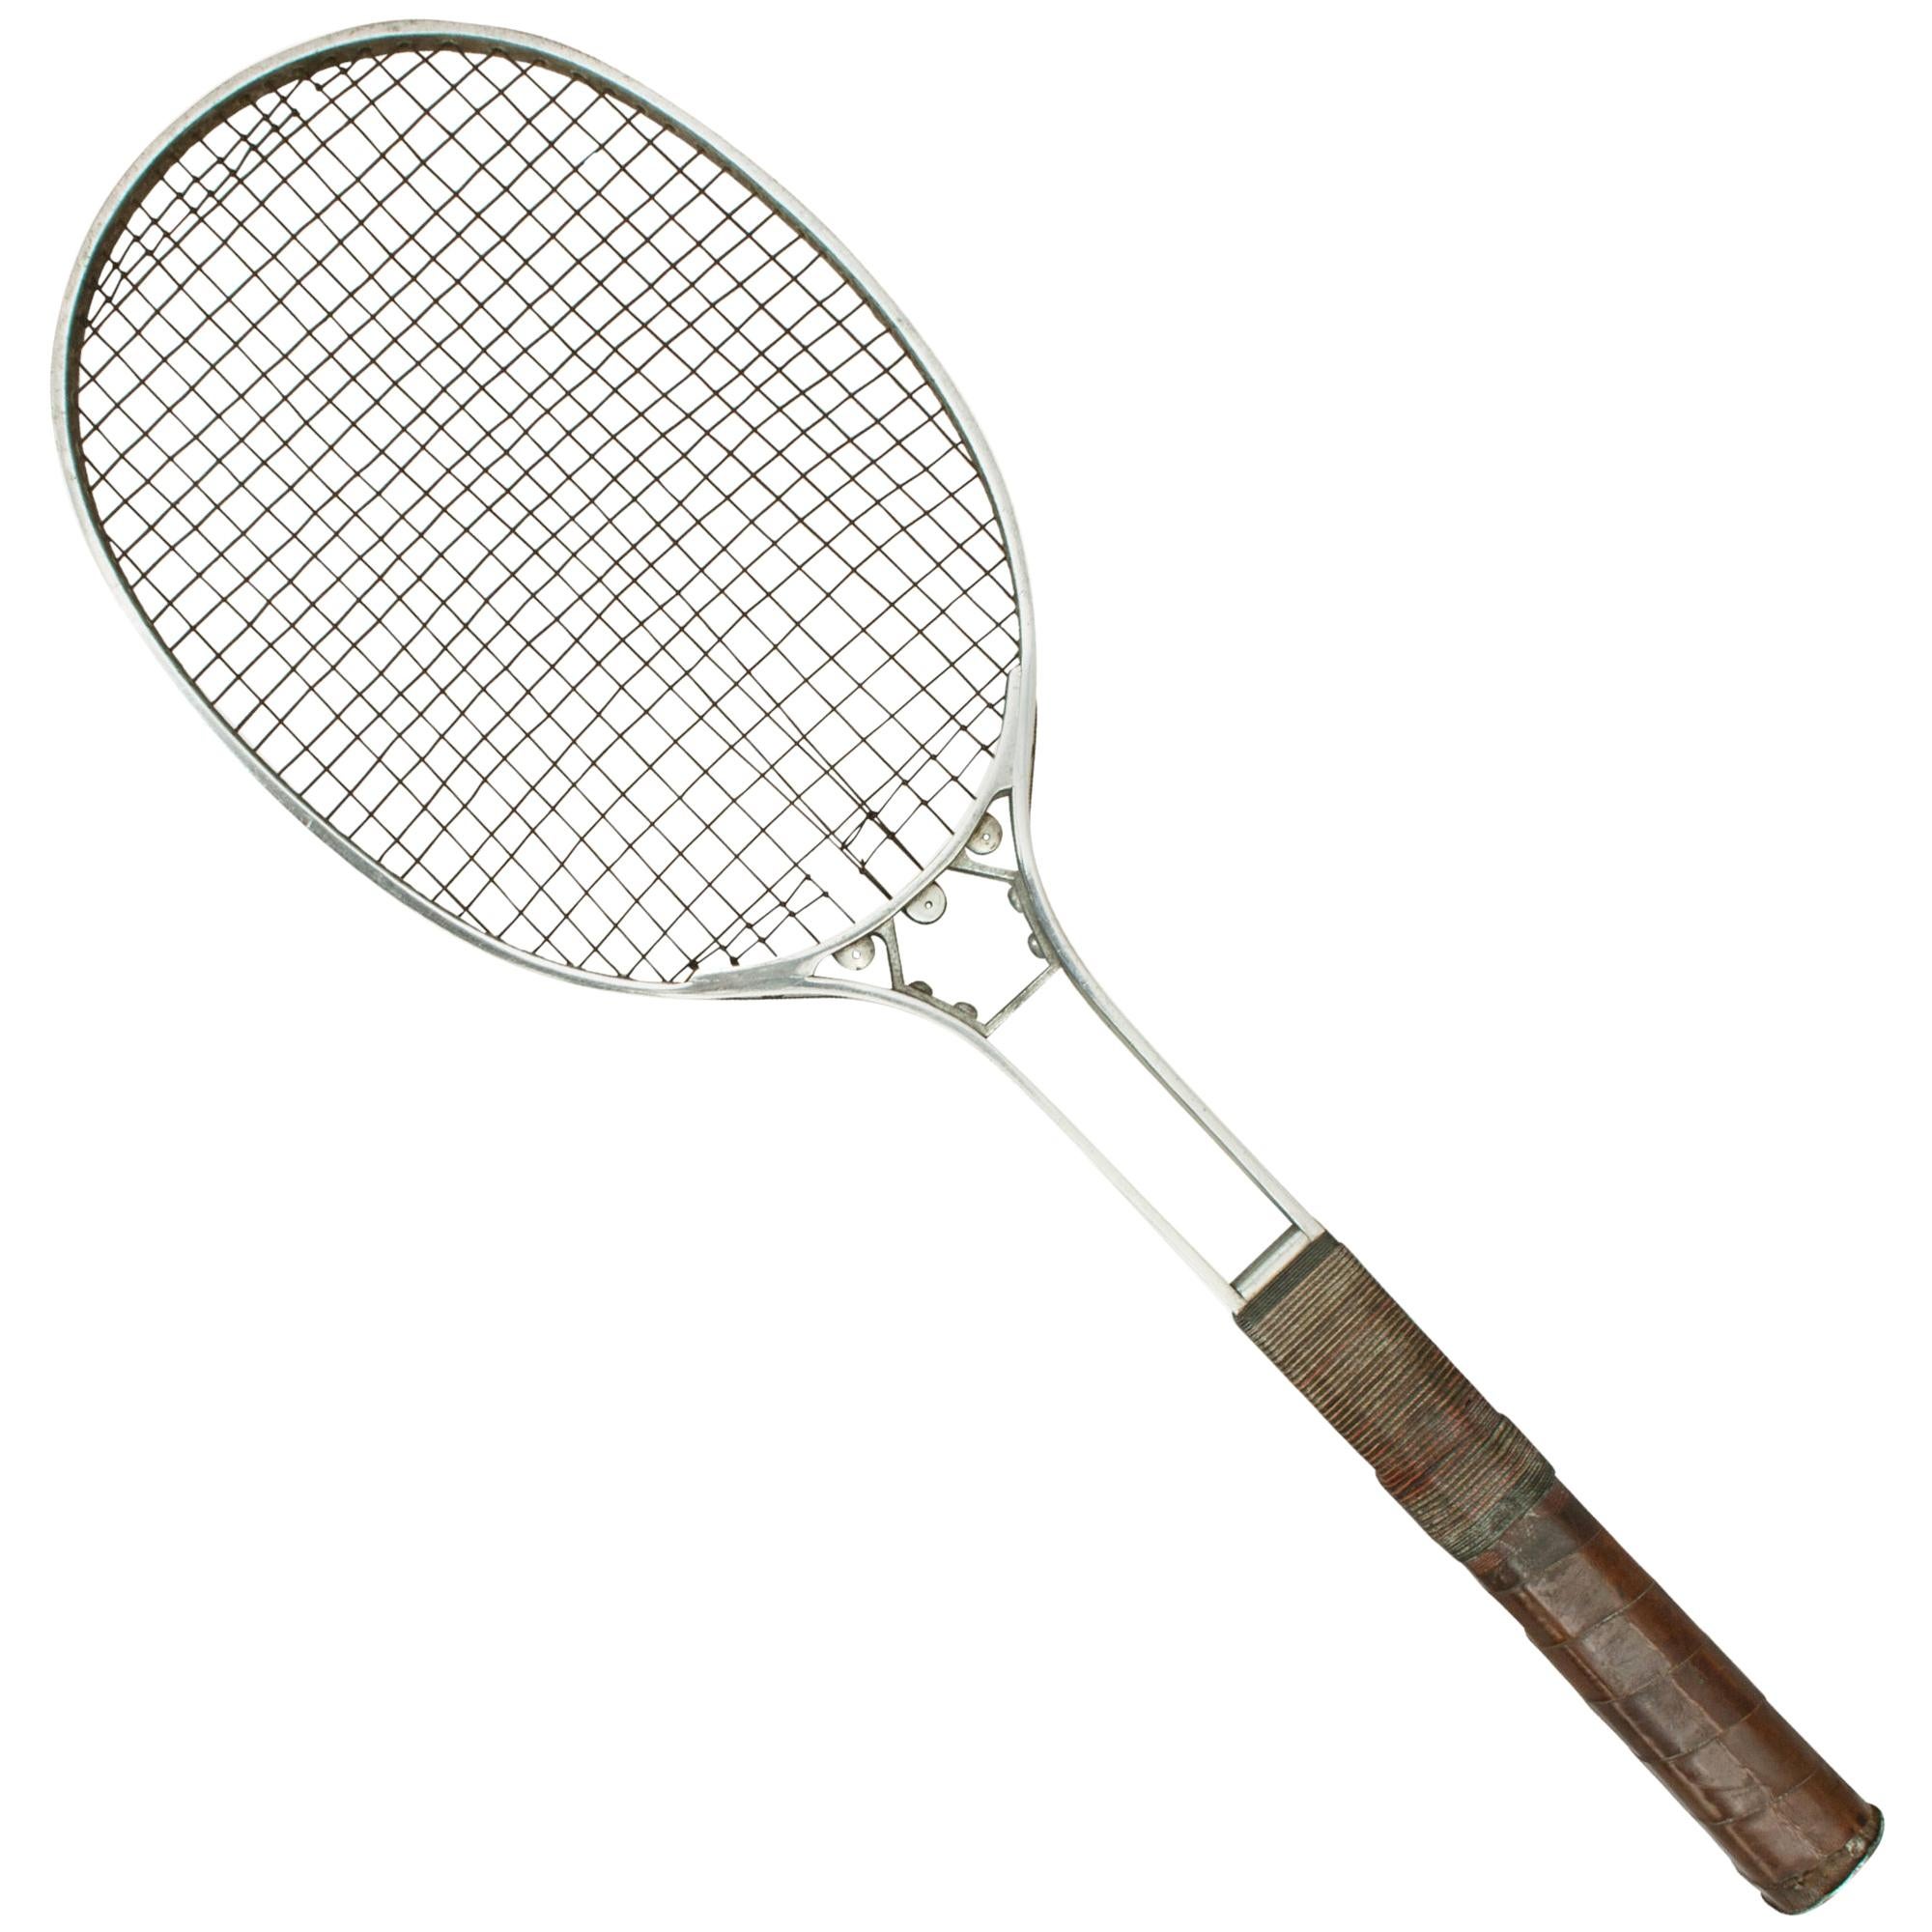 Ancienne raquette de tennis sur gazon Birmal en métal, entièrement en métal